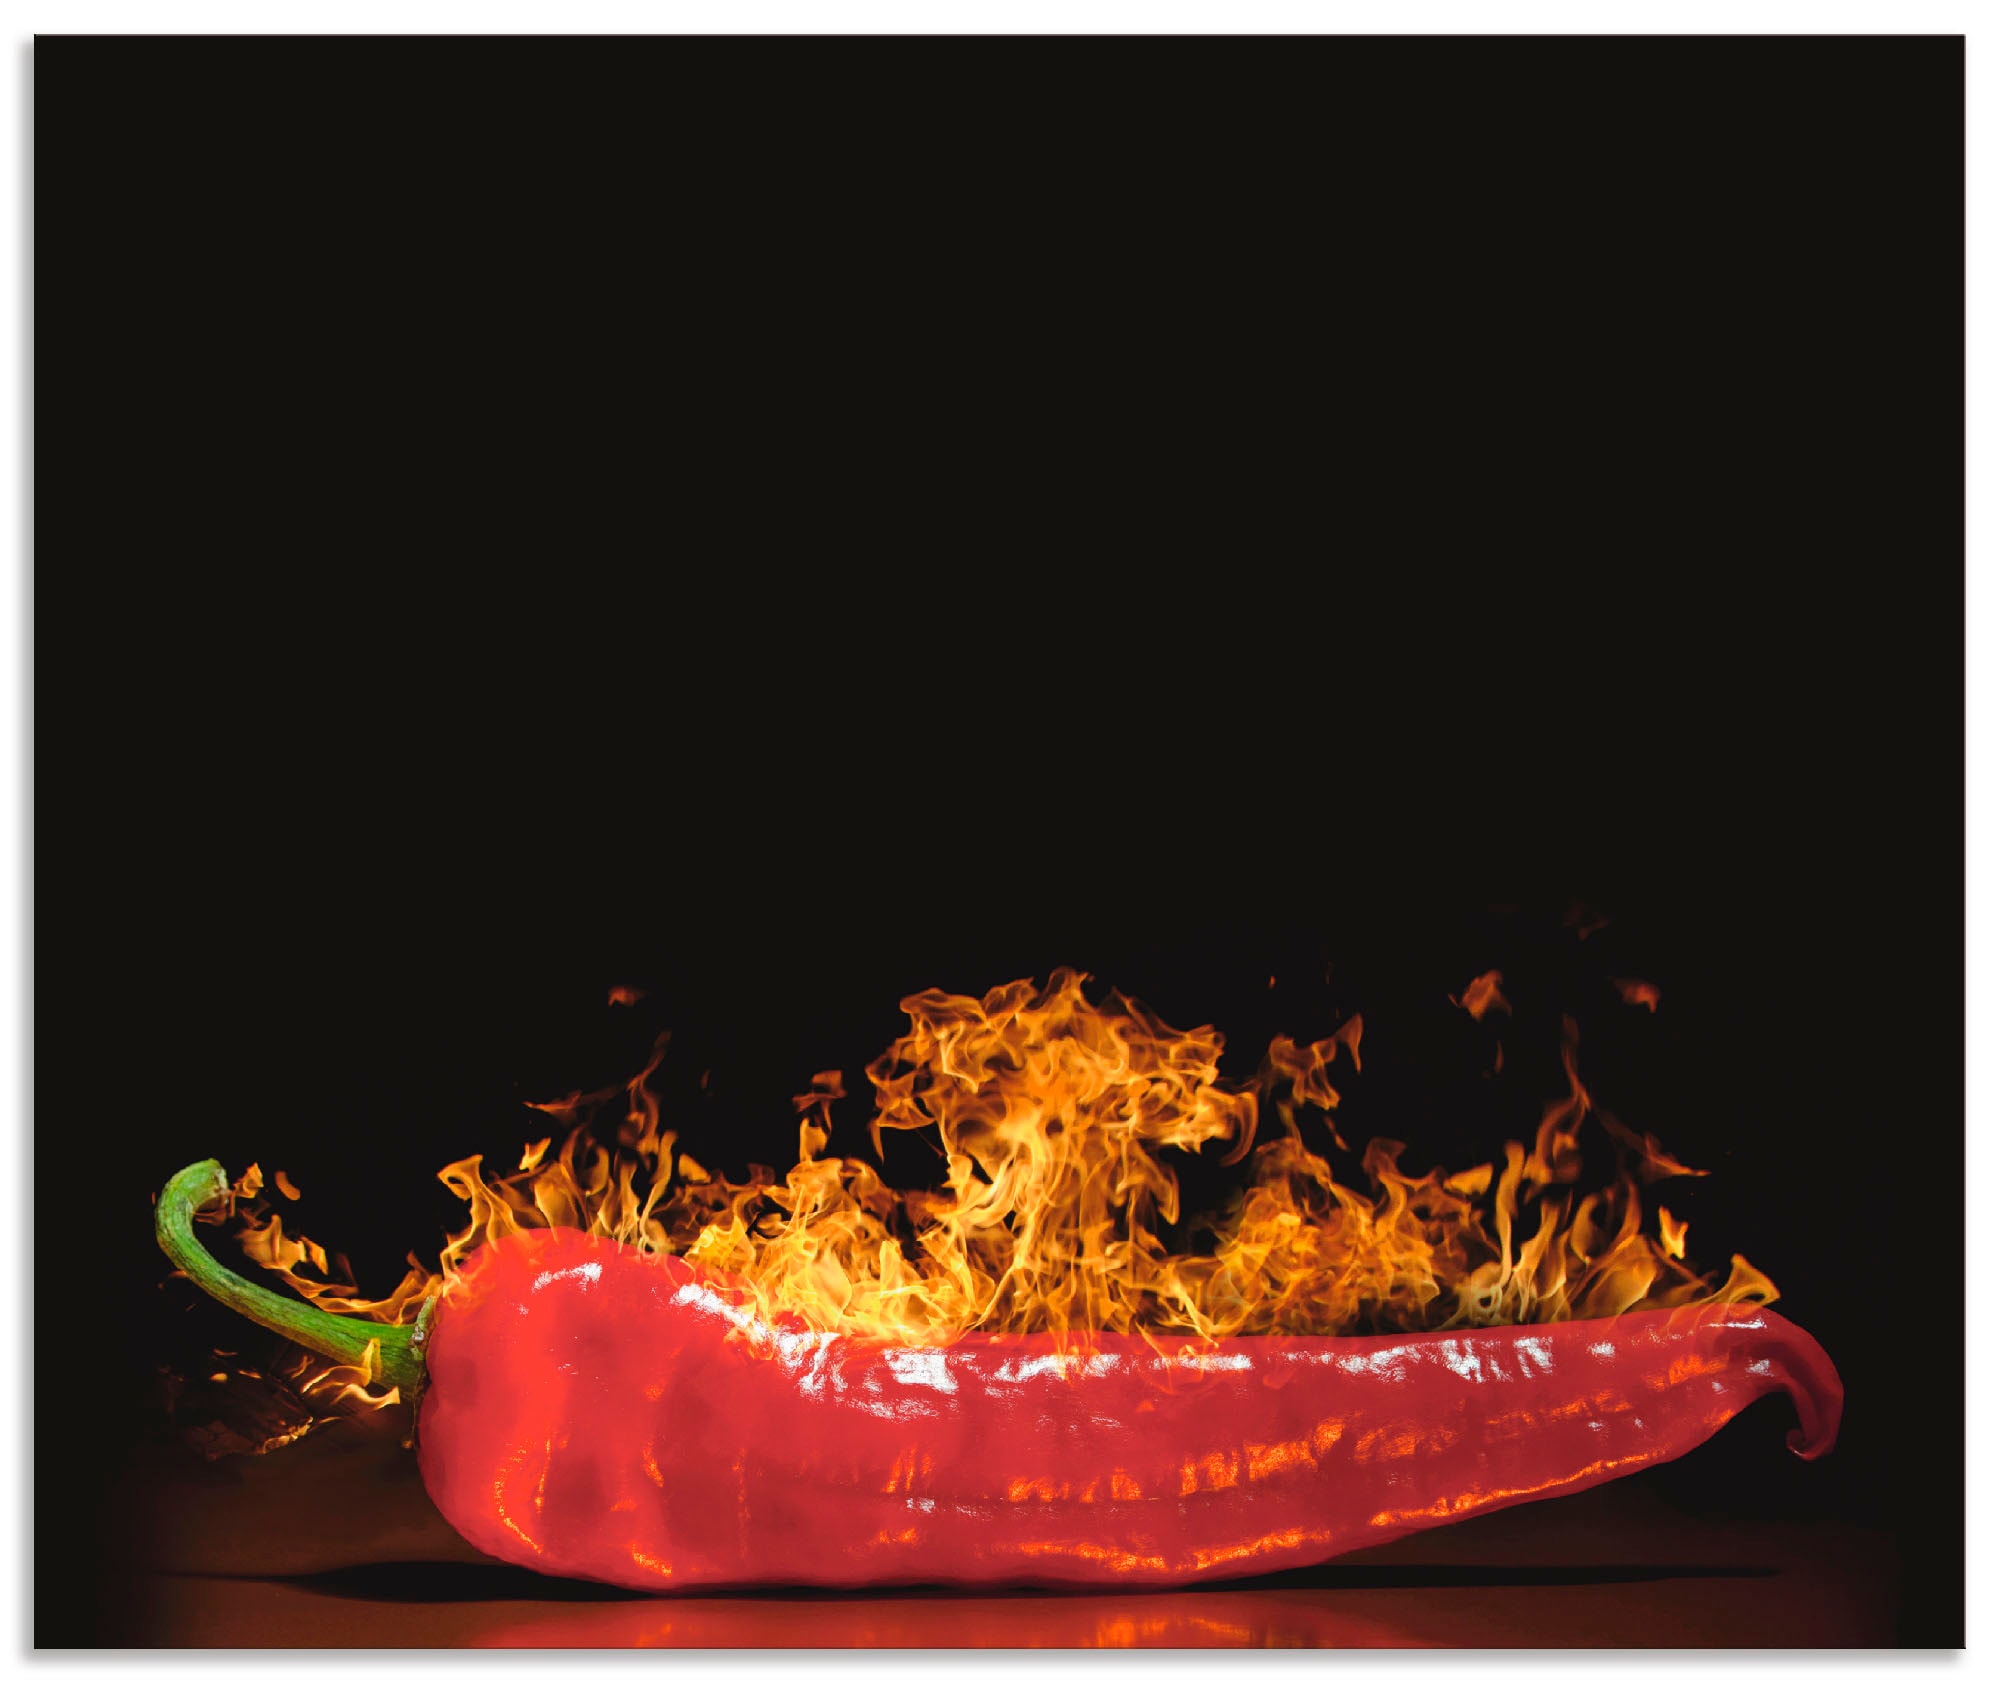 Artland Küchenrückwand »Roter scharfer Chilipfeffer«, (1 tlg.), Alu Spritzschutz mit Klebeband, einfache Montage